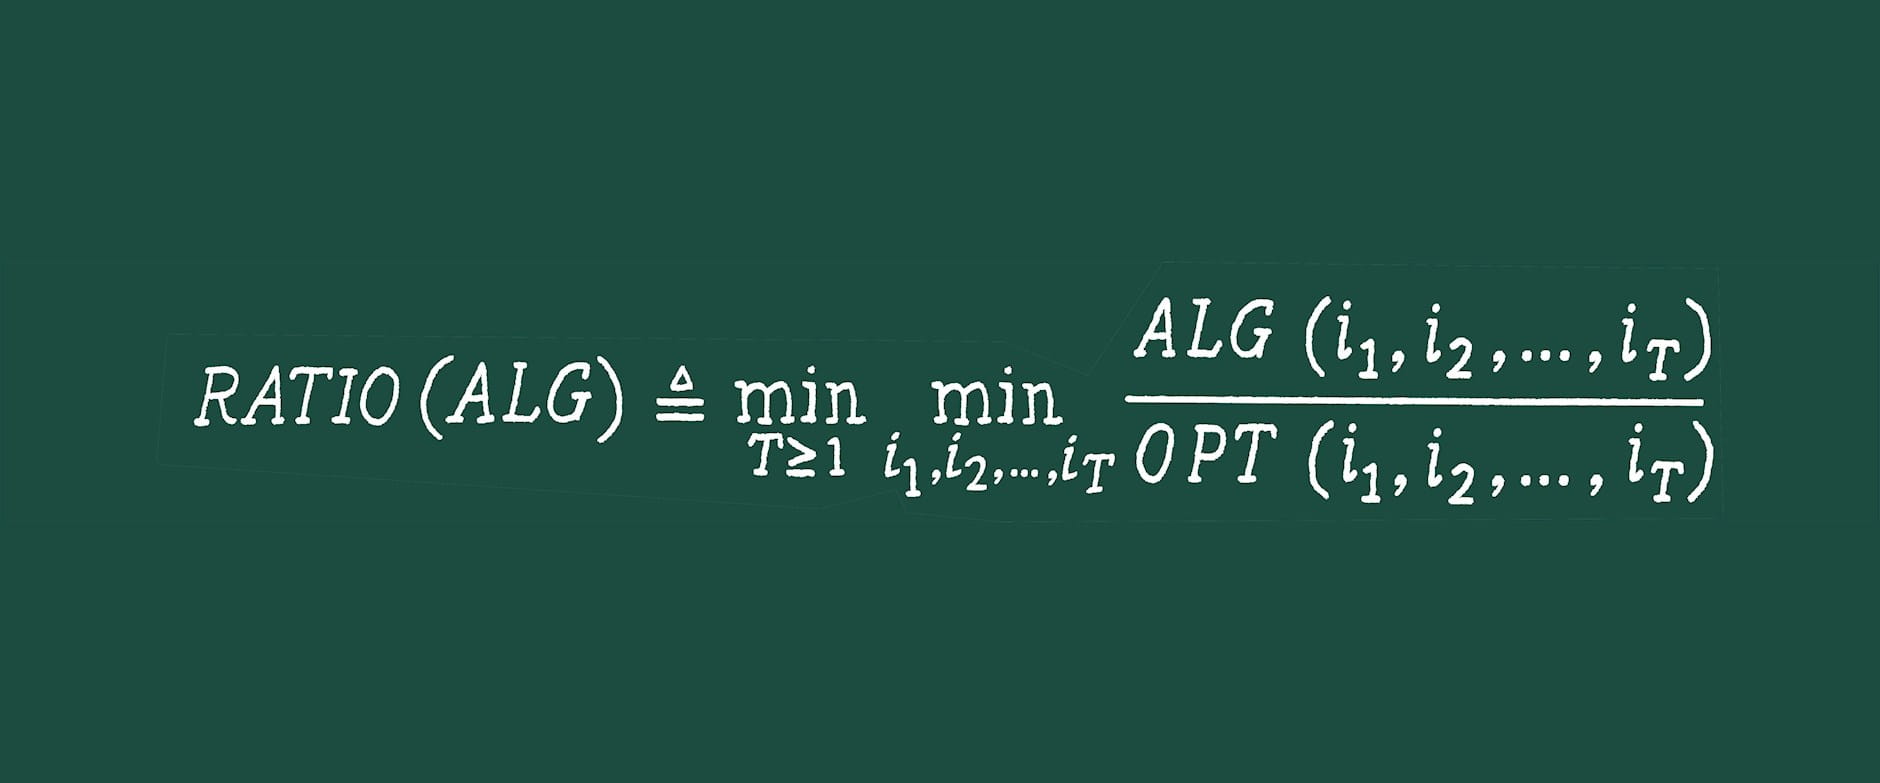 Equation written in chalkboard style